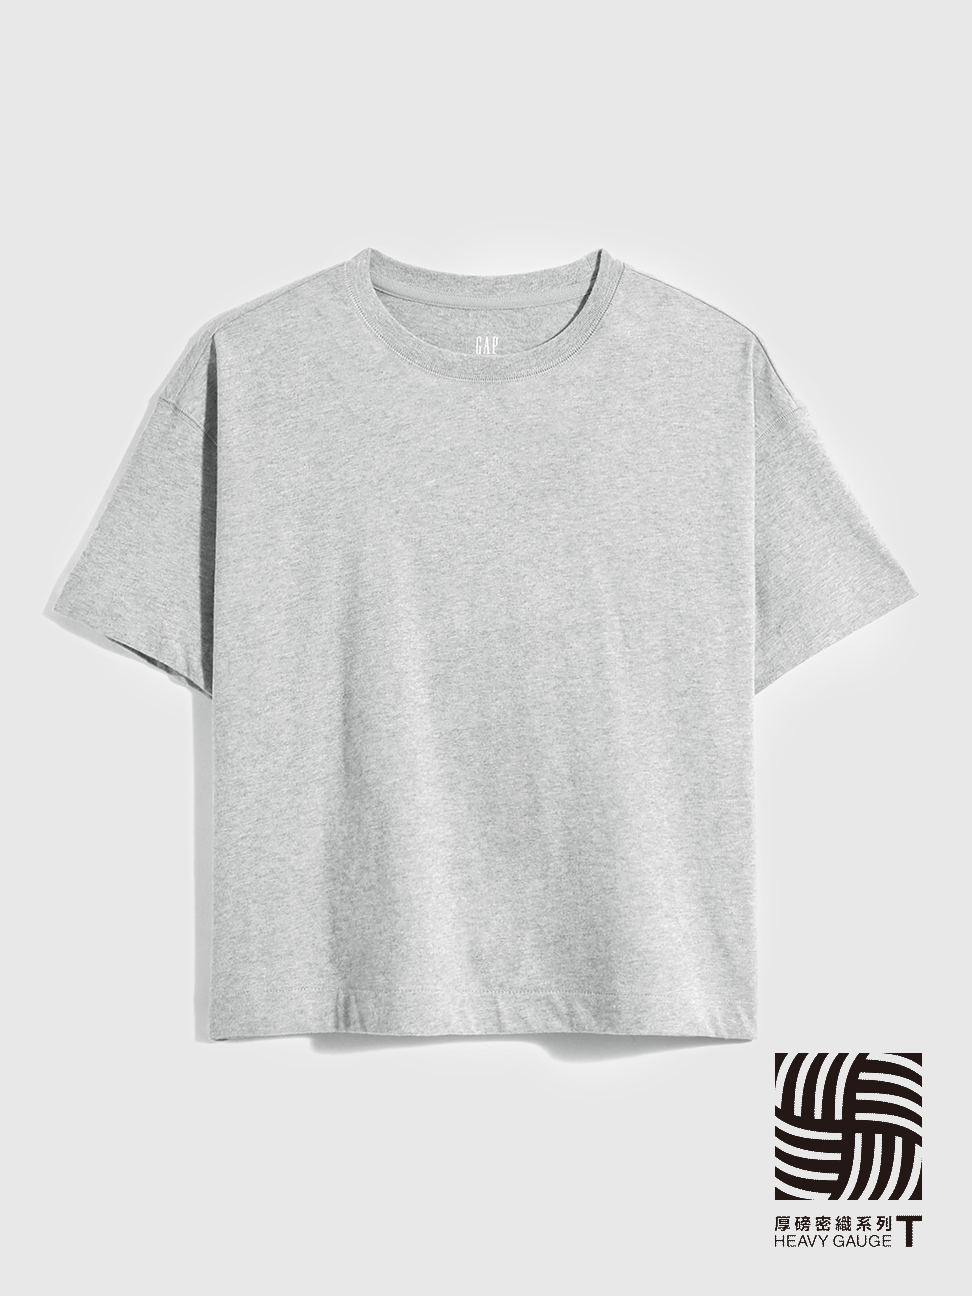 女裝|厚磅密織碳素軟磨系列 基本款條紋/素色短袖T恤